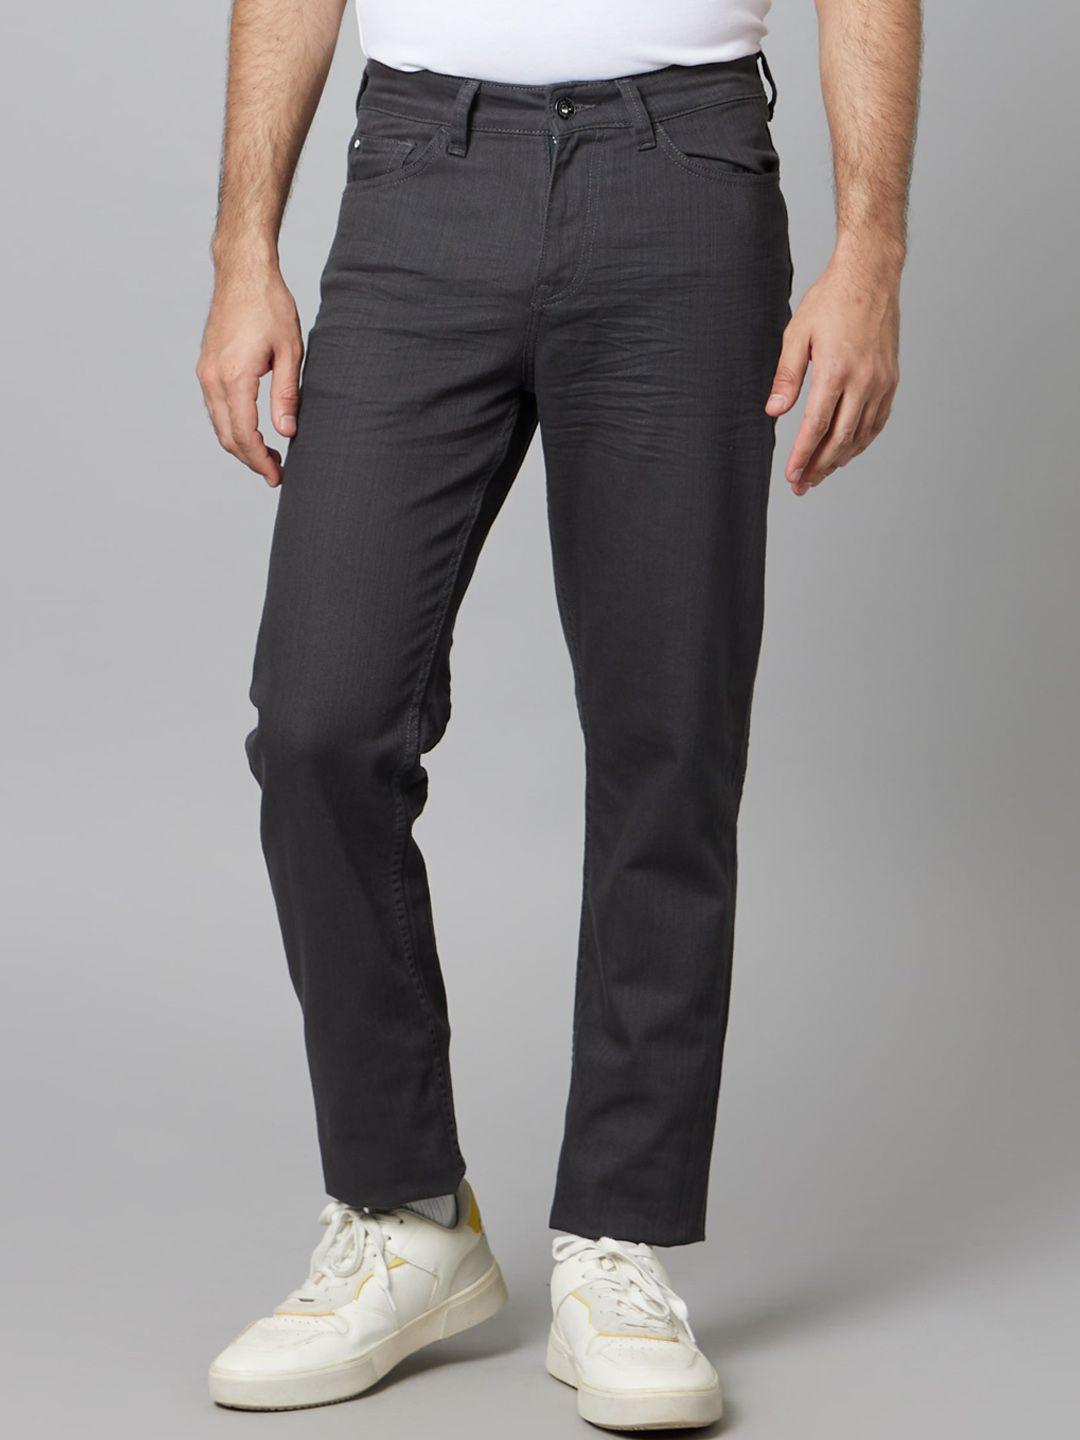 celio-men-jean-clean-look-stretchable-jeans